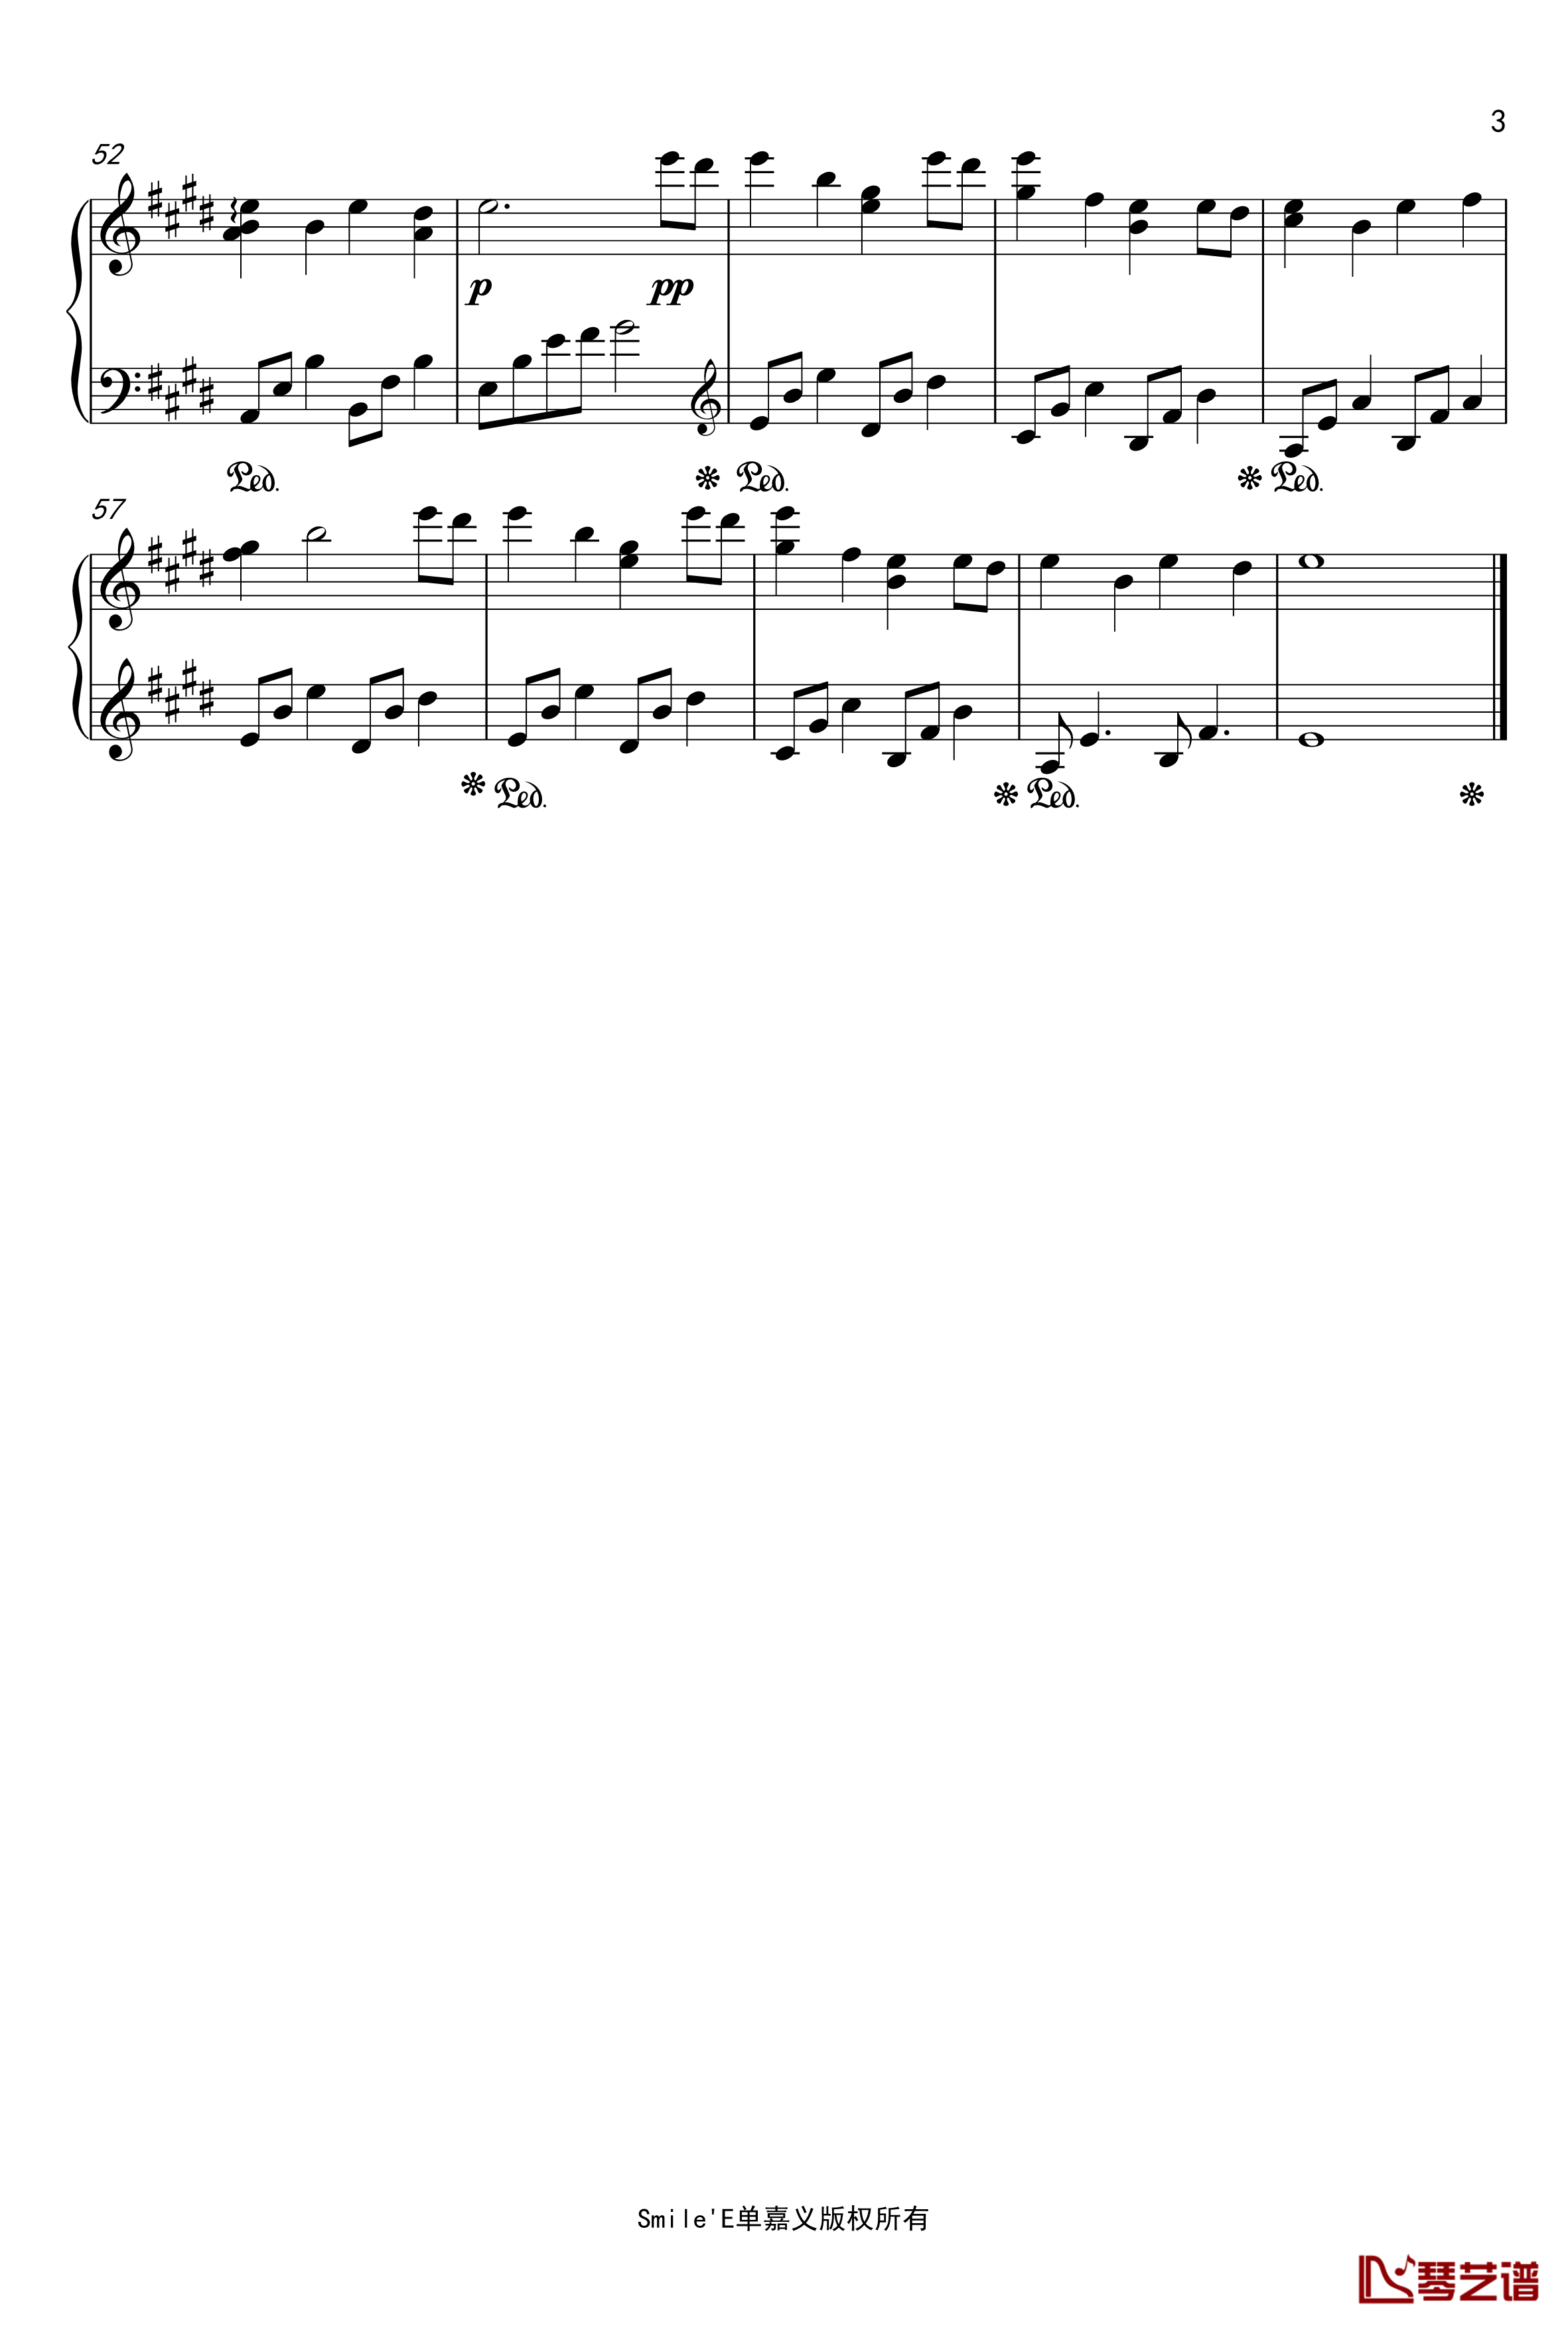 下一个你钢琴谱-第八钢琴曲 -sjy6153